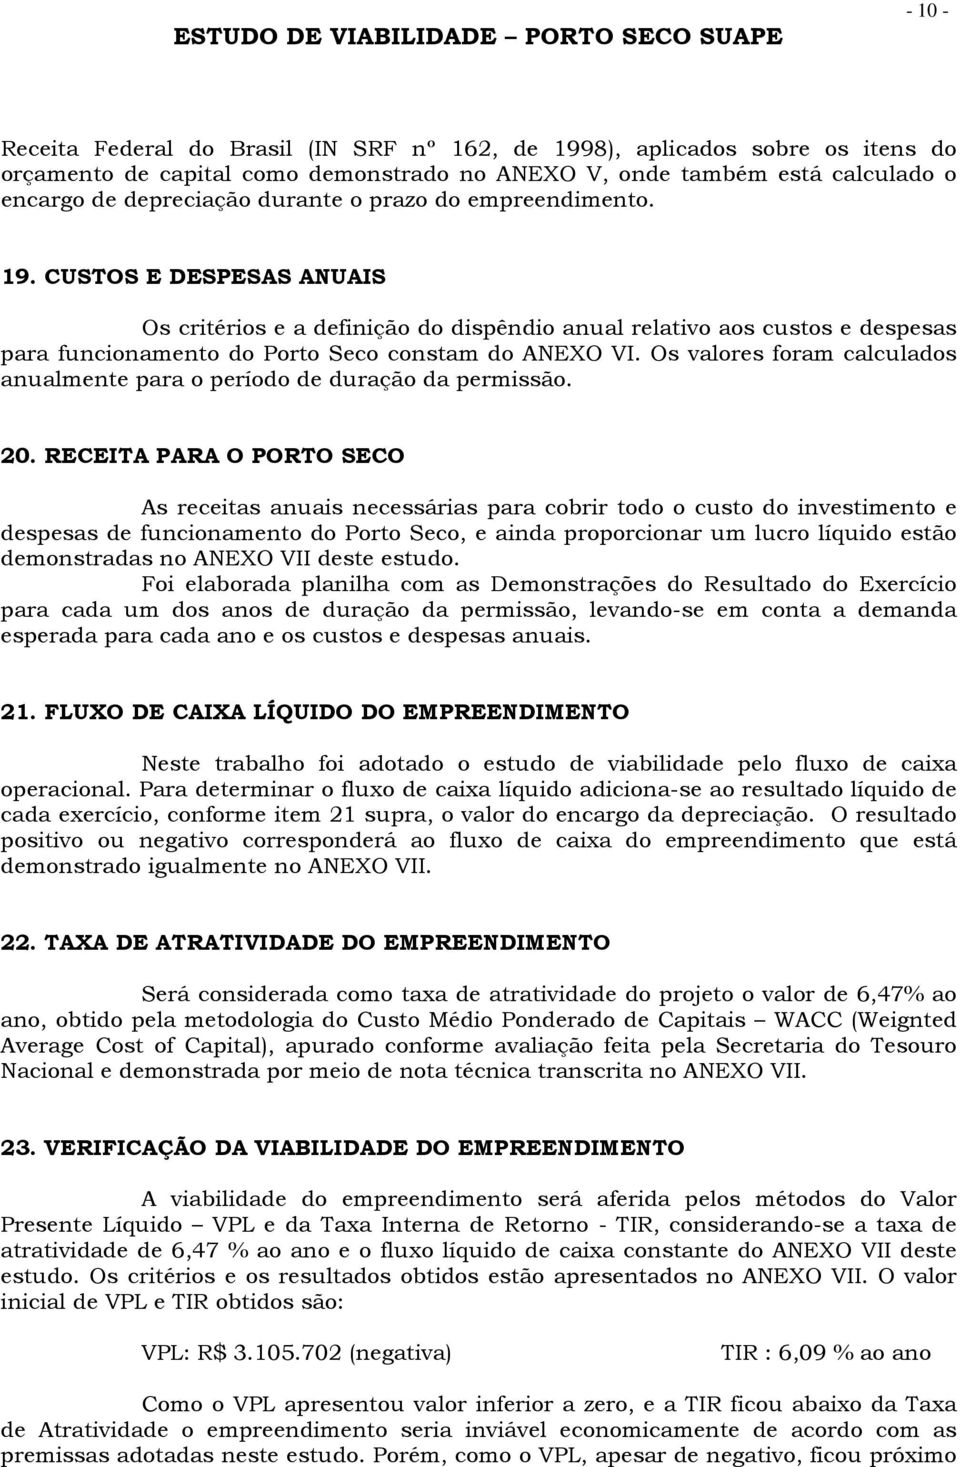 CUSTOS E DESPESAS ANUAIS Os critérios e a definição do dispêndio anual relativo aos custos e despesas para funcionamento do Porto Seco constam do ANEXO VI.